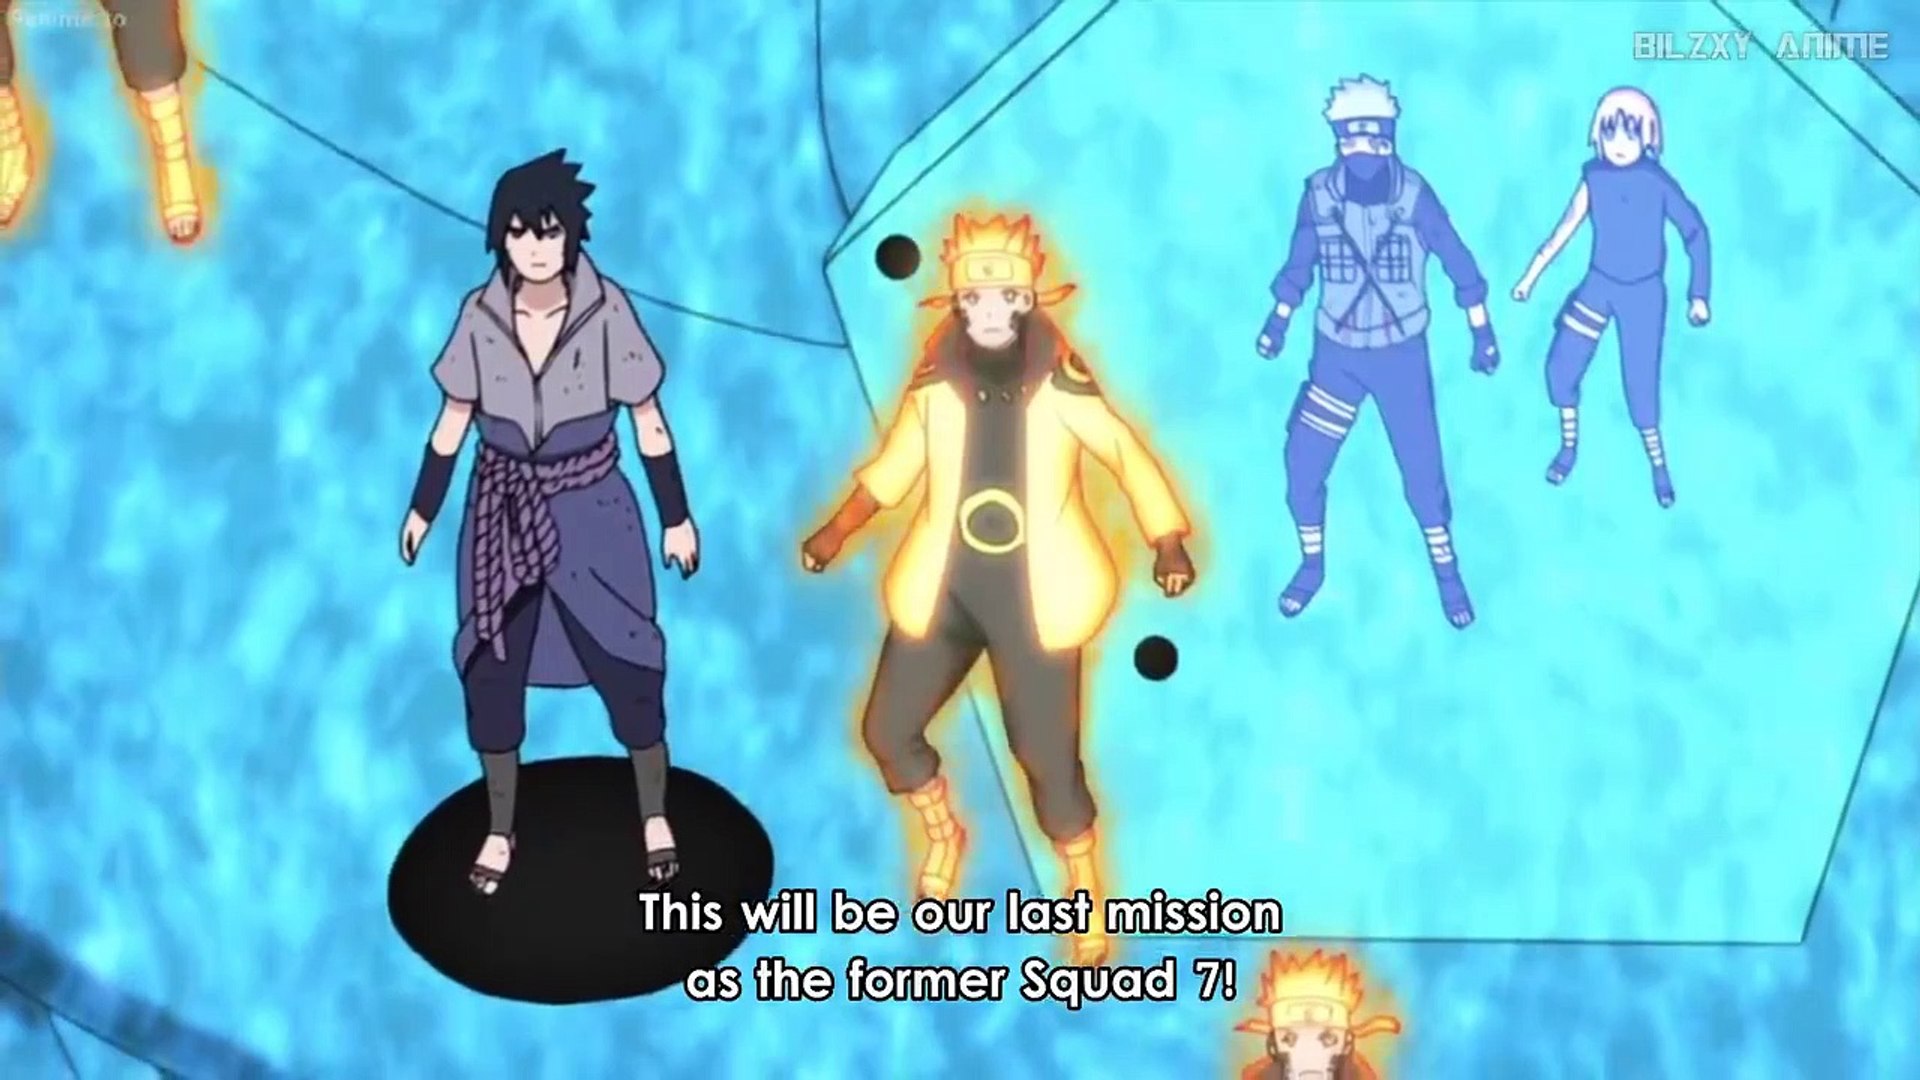 Anime Fights HD - Naruto & Sasuke vs Momoshiki - Boruto Naruto the movie -  video Dailymotion